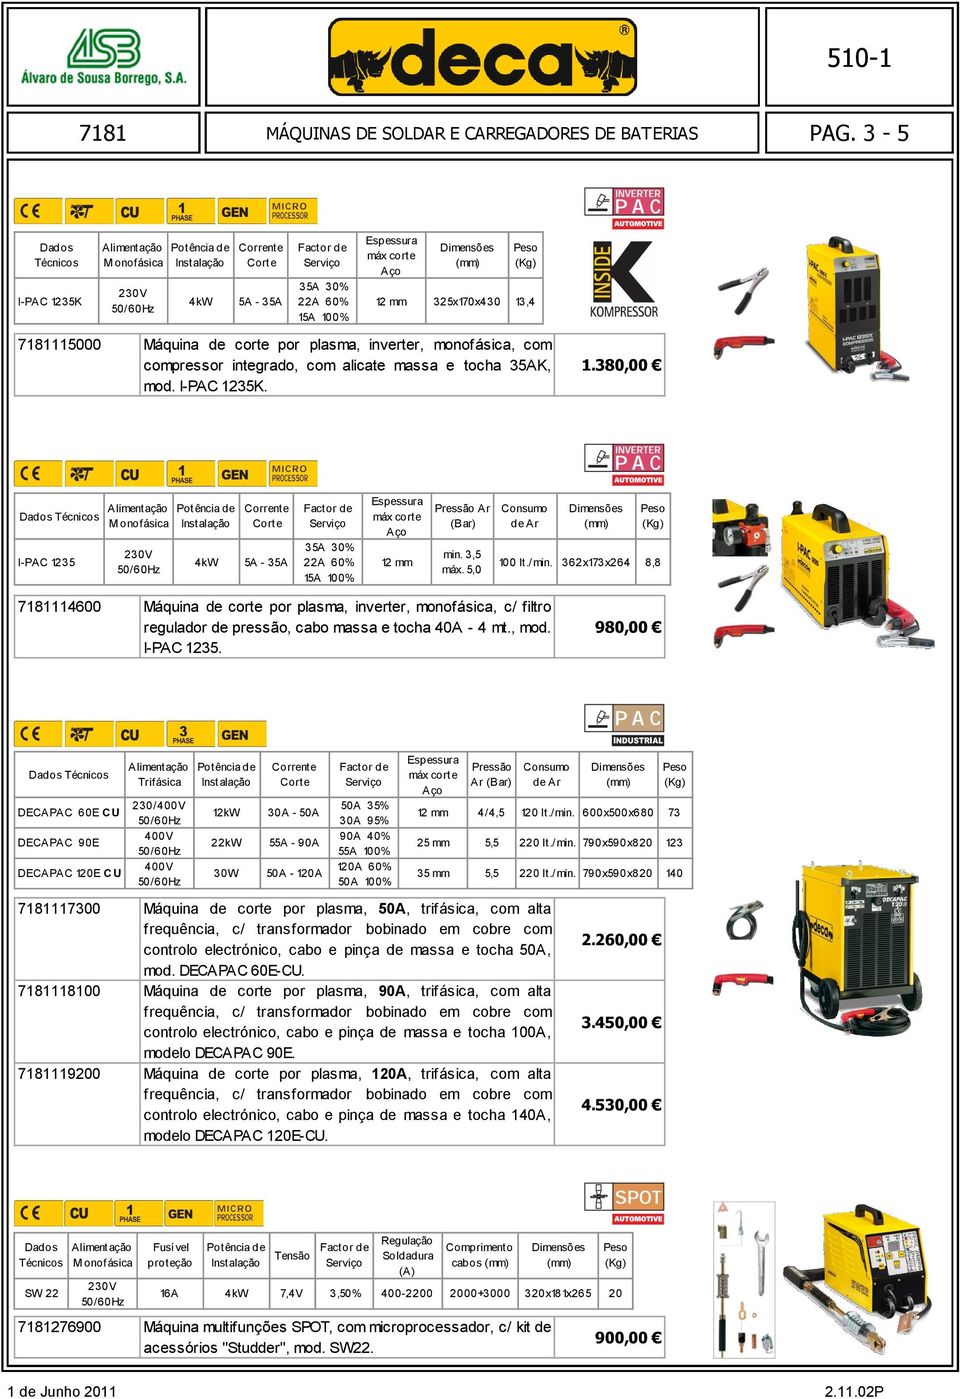 362x173x264 8,8 114600 Máquina de corte por plasma, inverter, monofásica, c/ filtro regulador de pressão, cabo massa e tocha 40A - 4 mt., mod. I-PAC 1235.